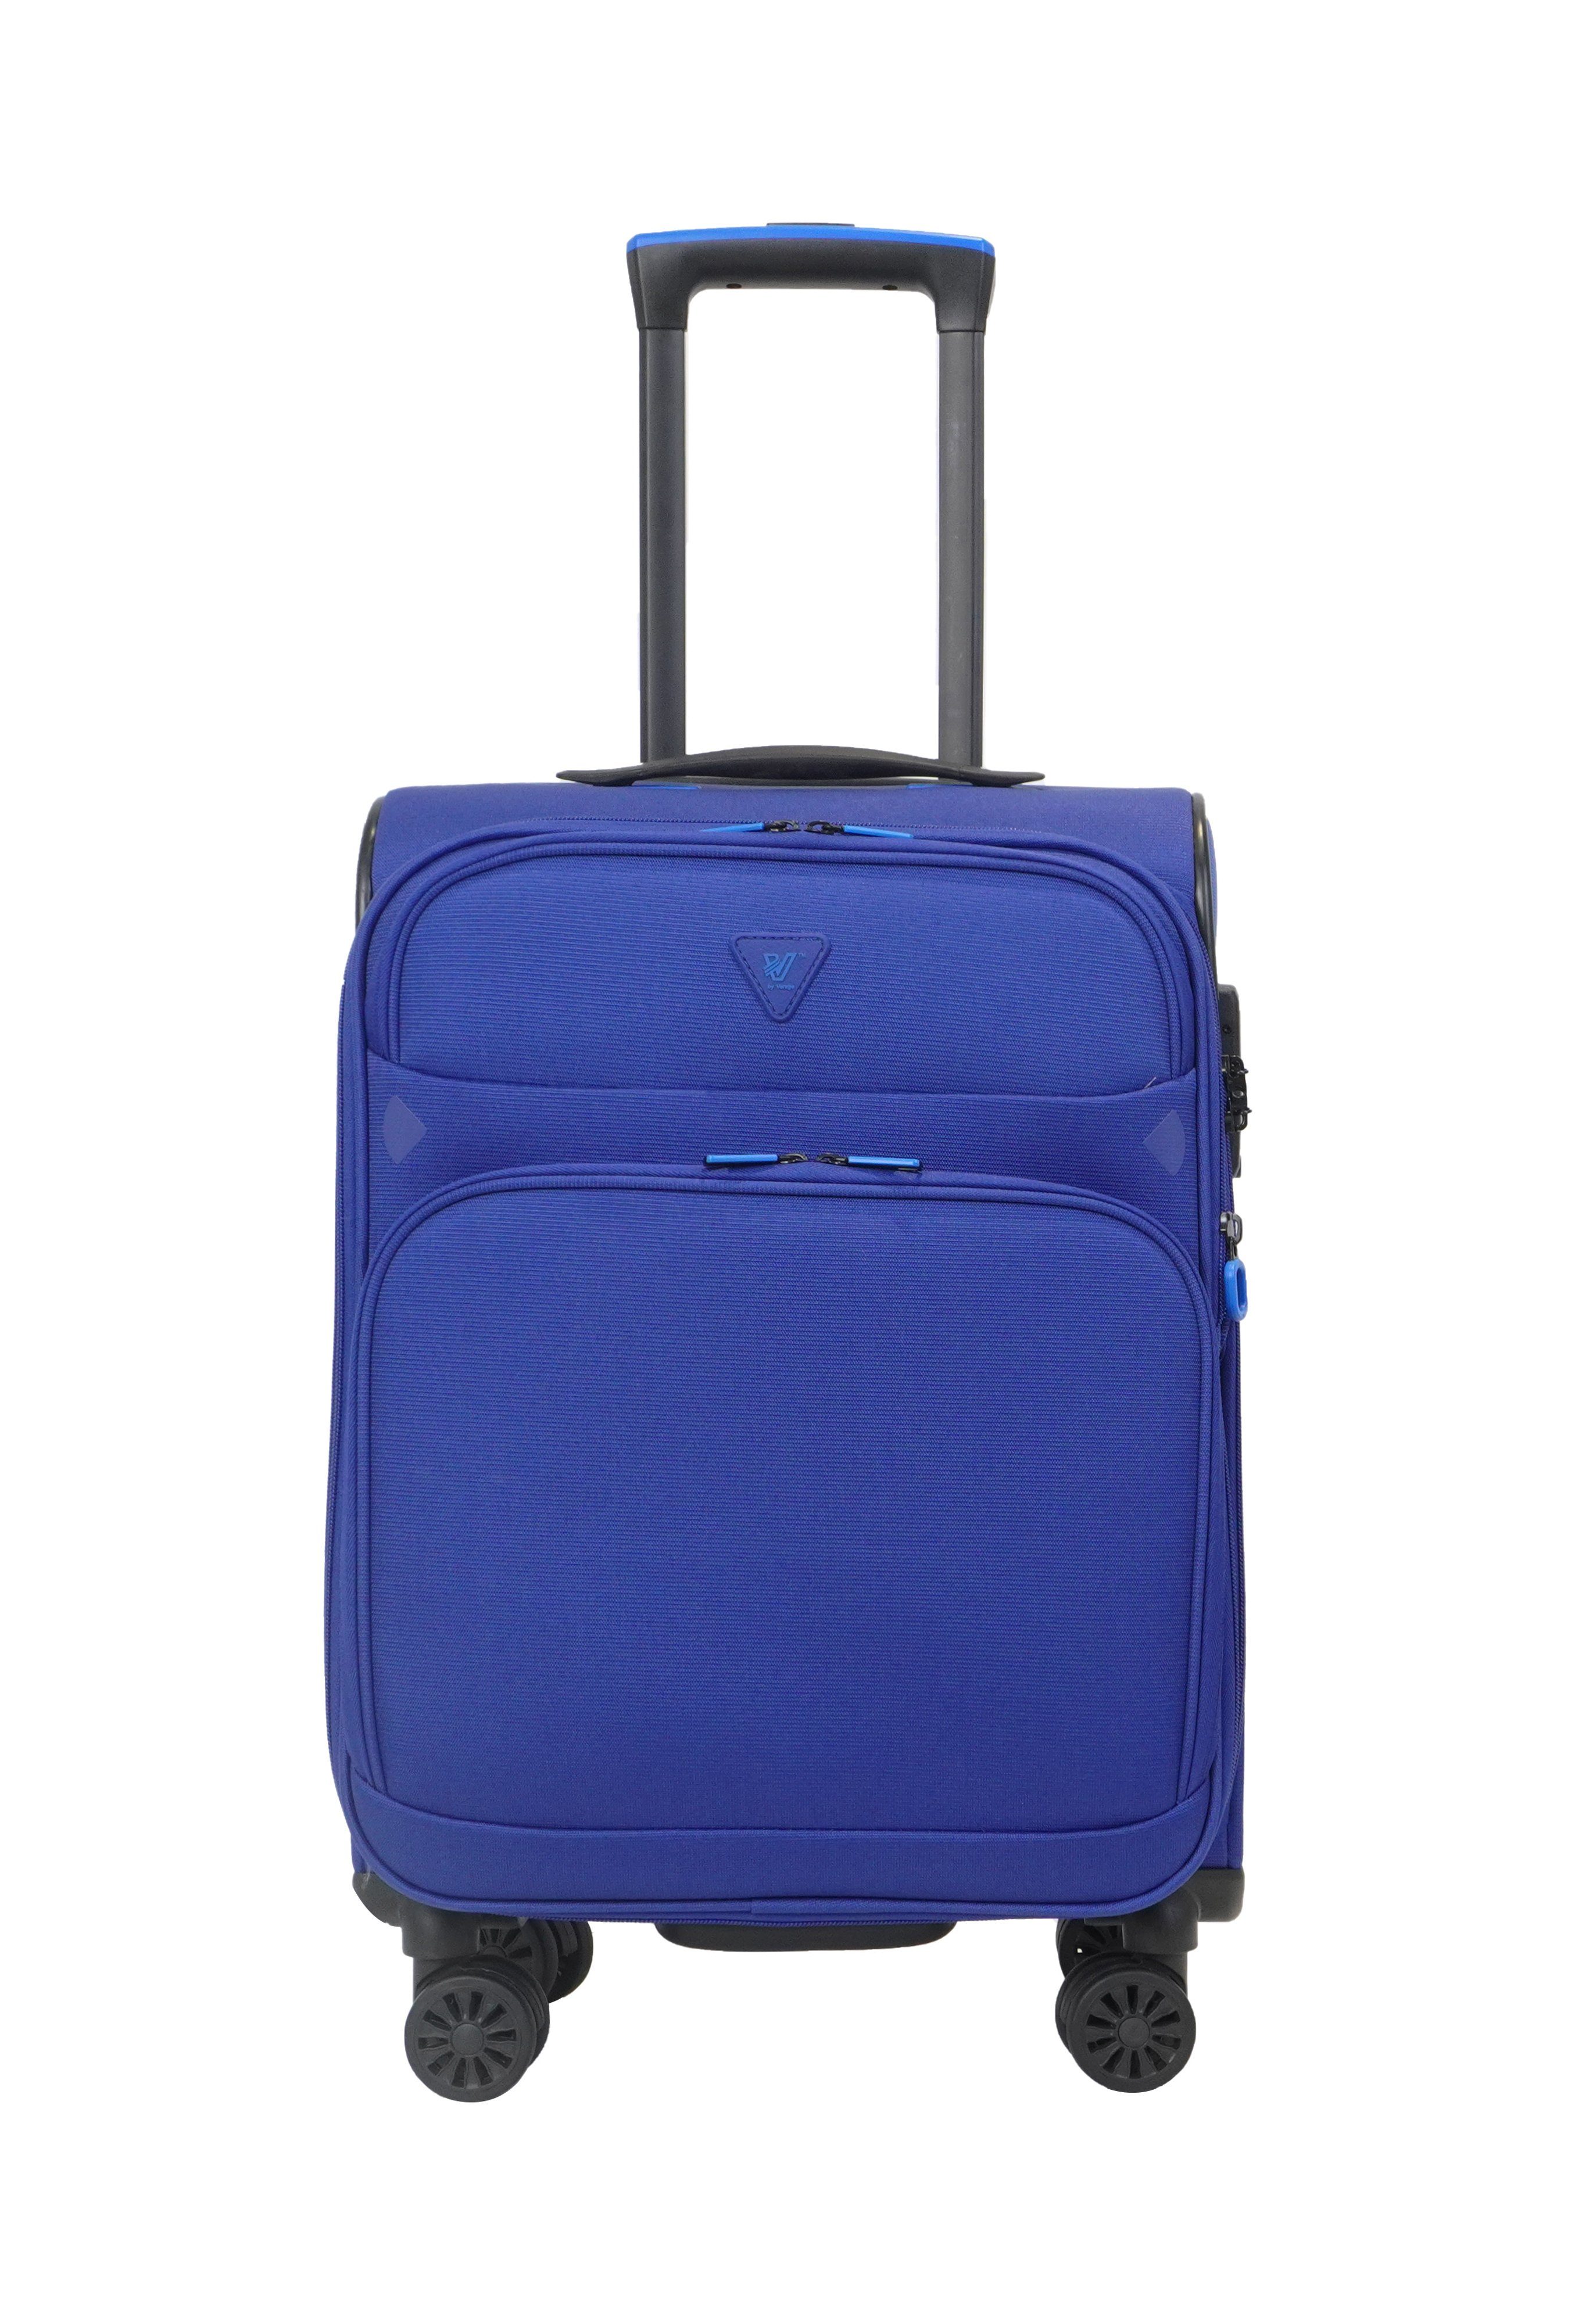 Weichgepäck-Trolley 4 Rollen, TSA-Zahlenschloss, Reisekoffer, erweiterbar, Blau-Violet Breeze, Verage schwarz